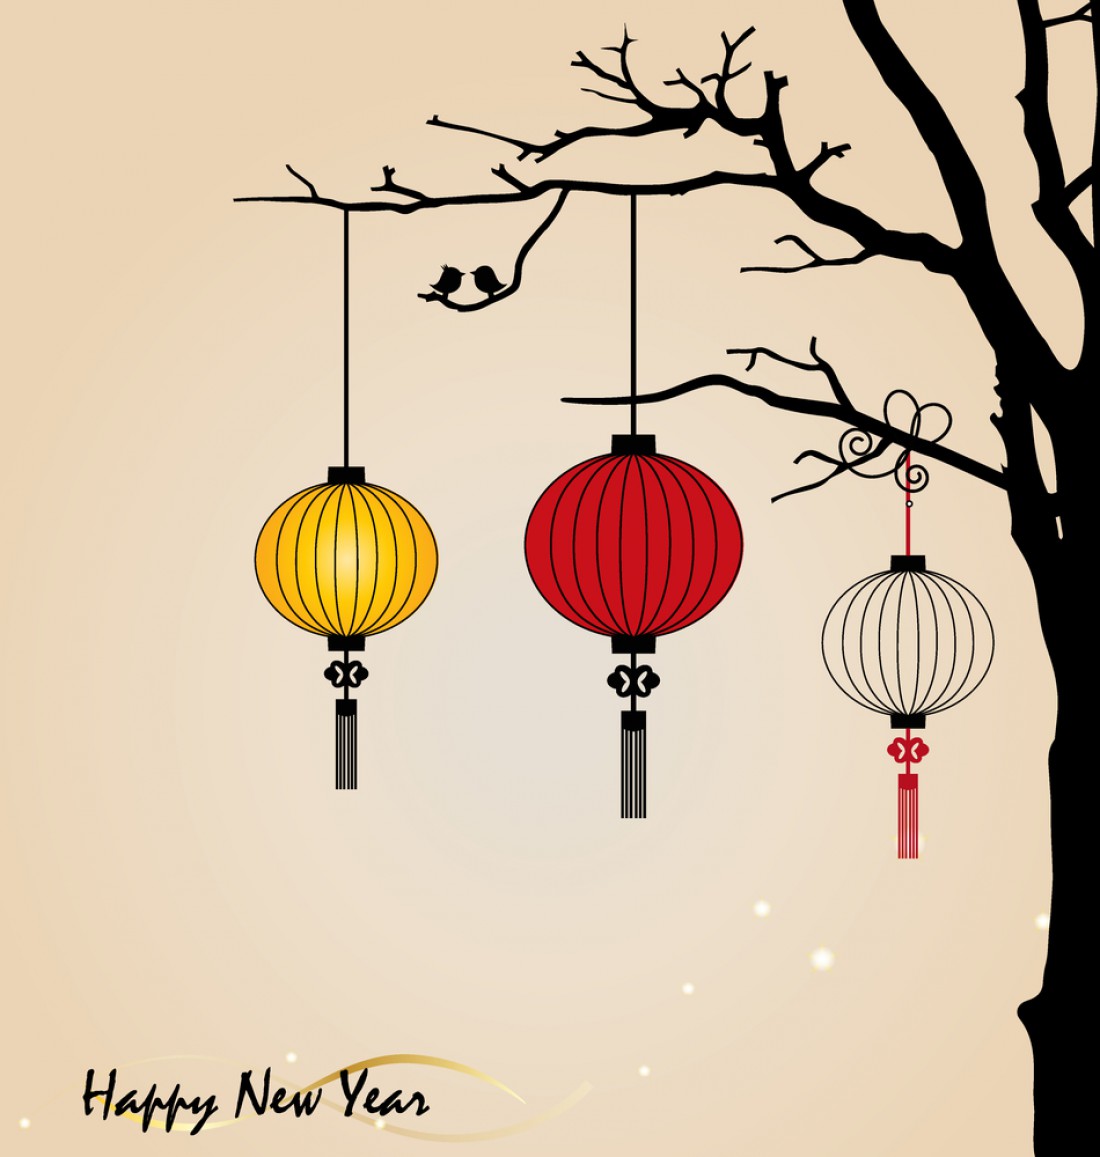 Китайский Новый год 2017: дата праздника